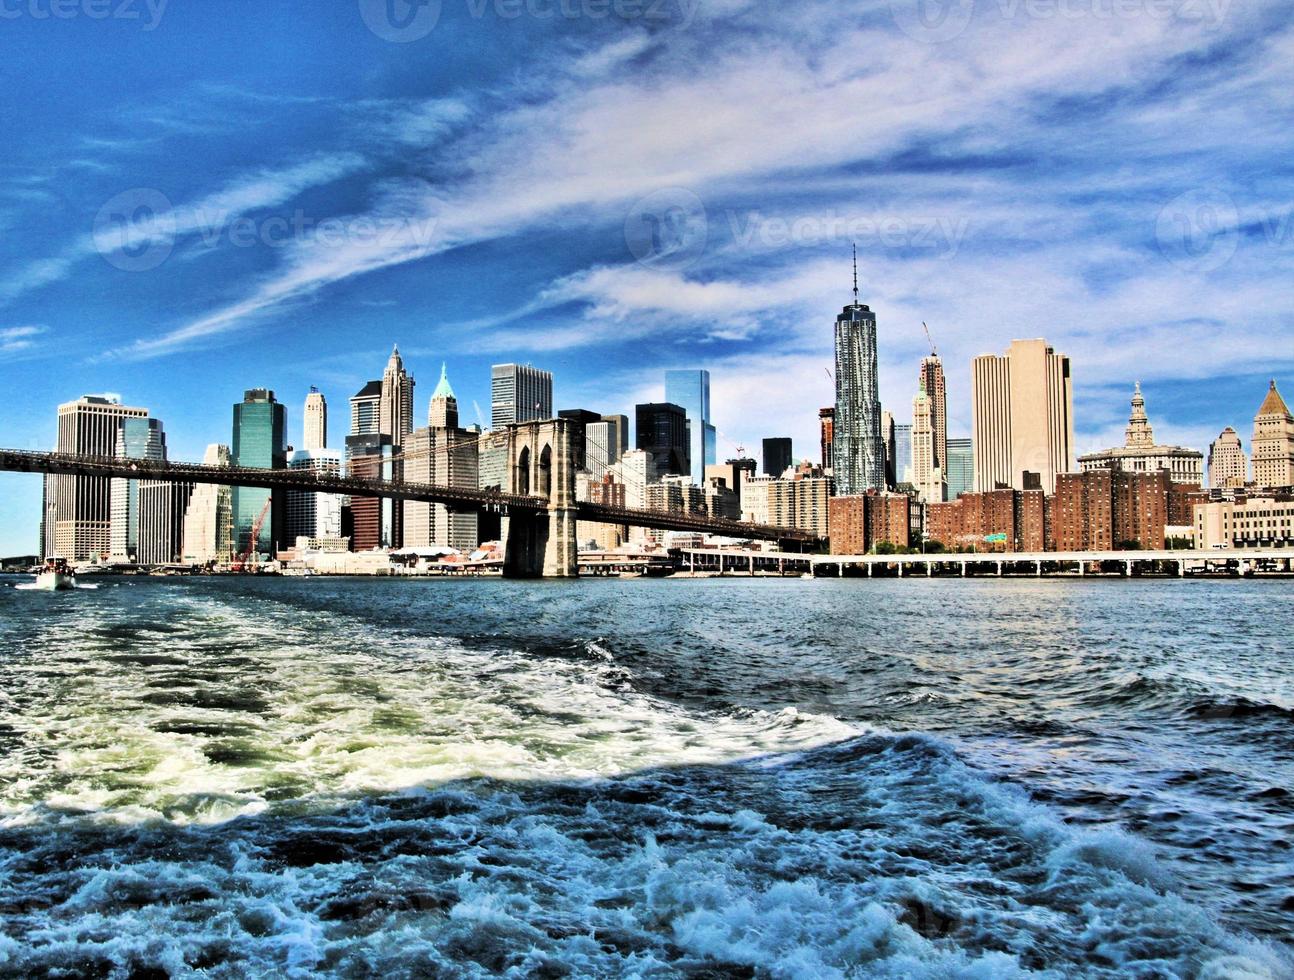 en panorama- se av ny york stad i de USA foto